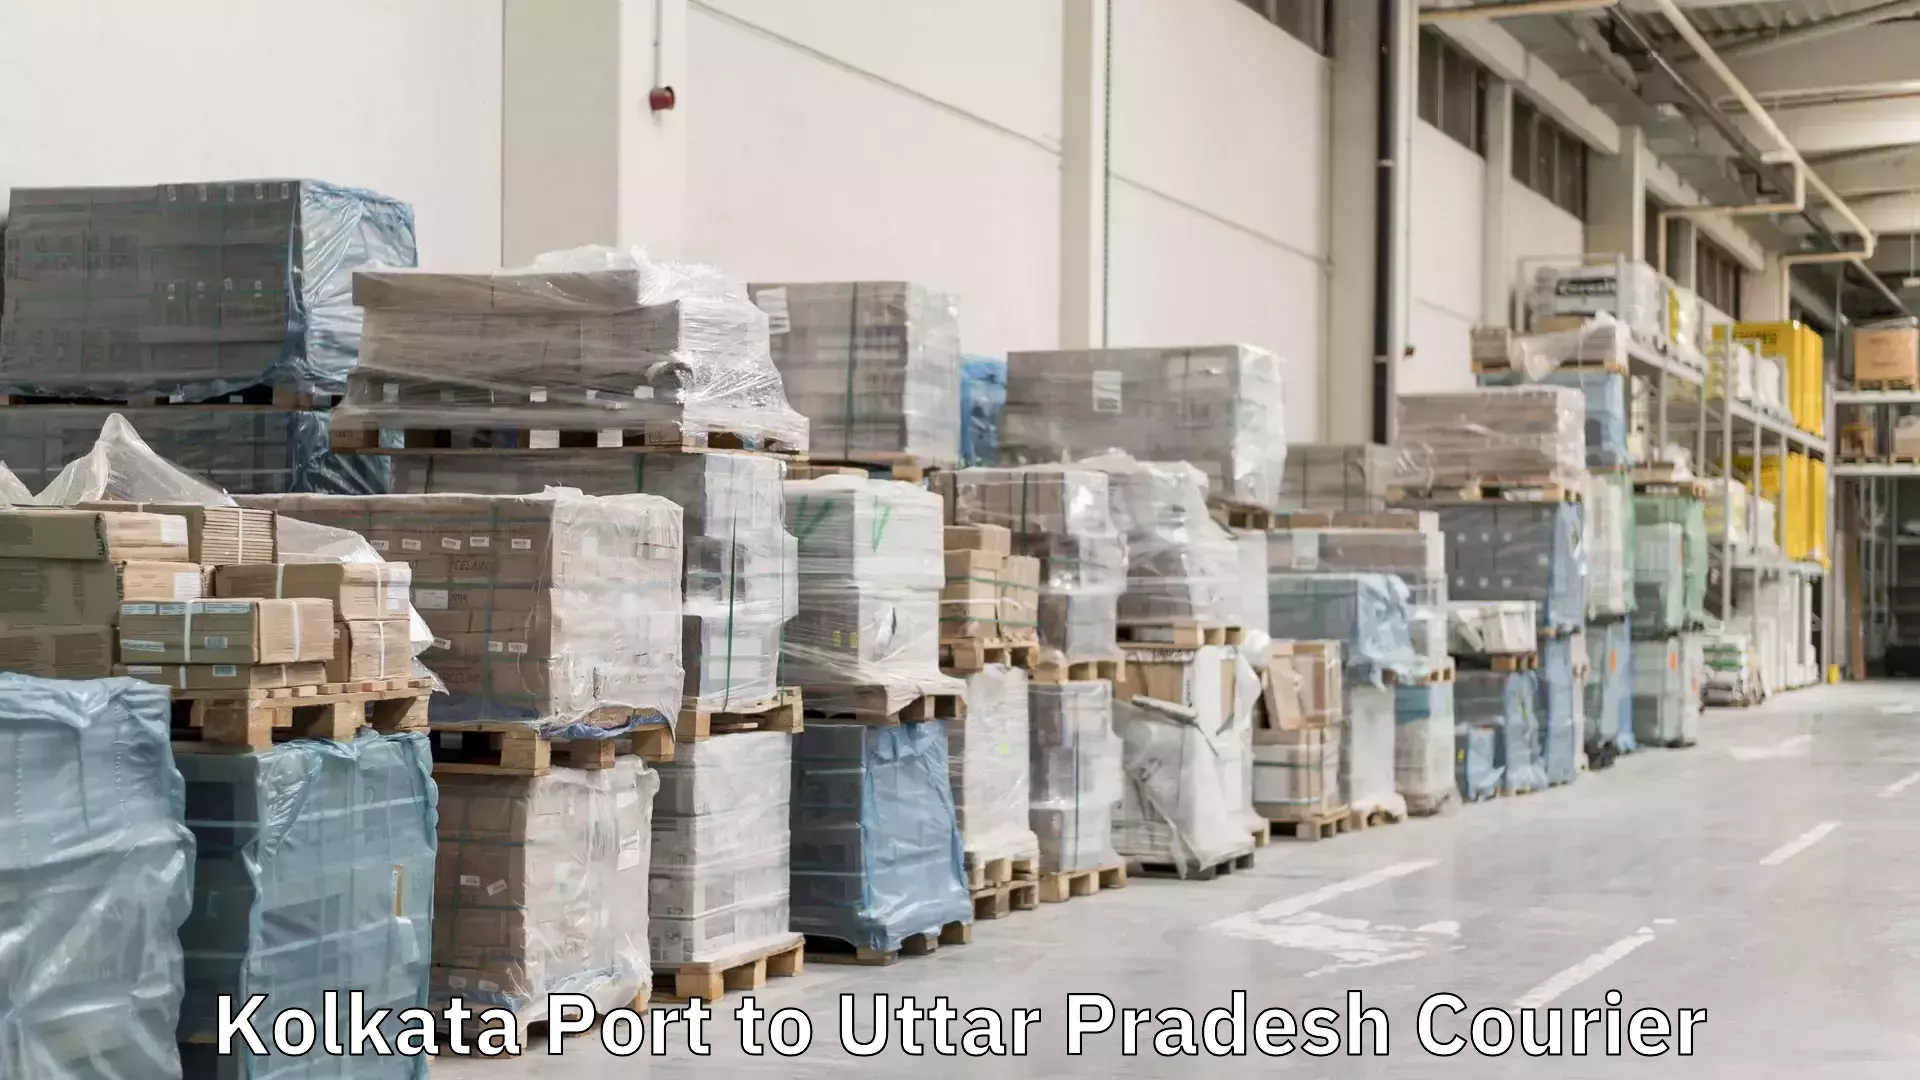 Special handling courier Kolkata Port to Uttar Pradesh